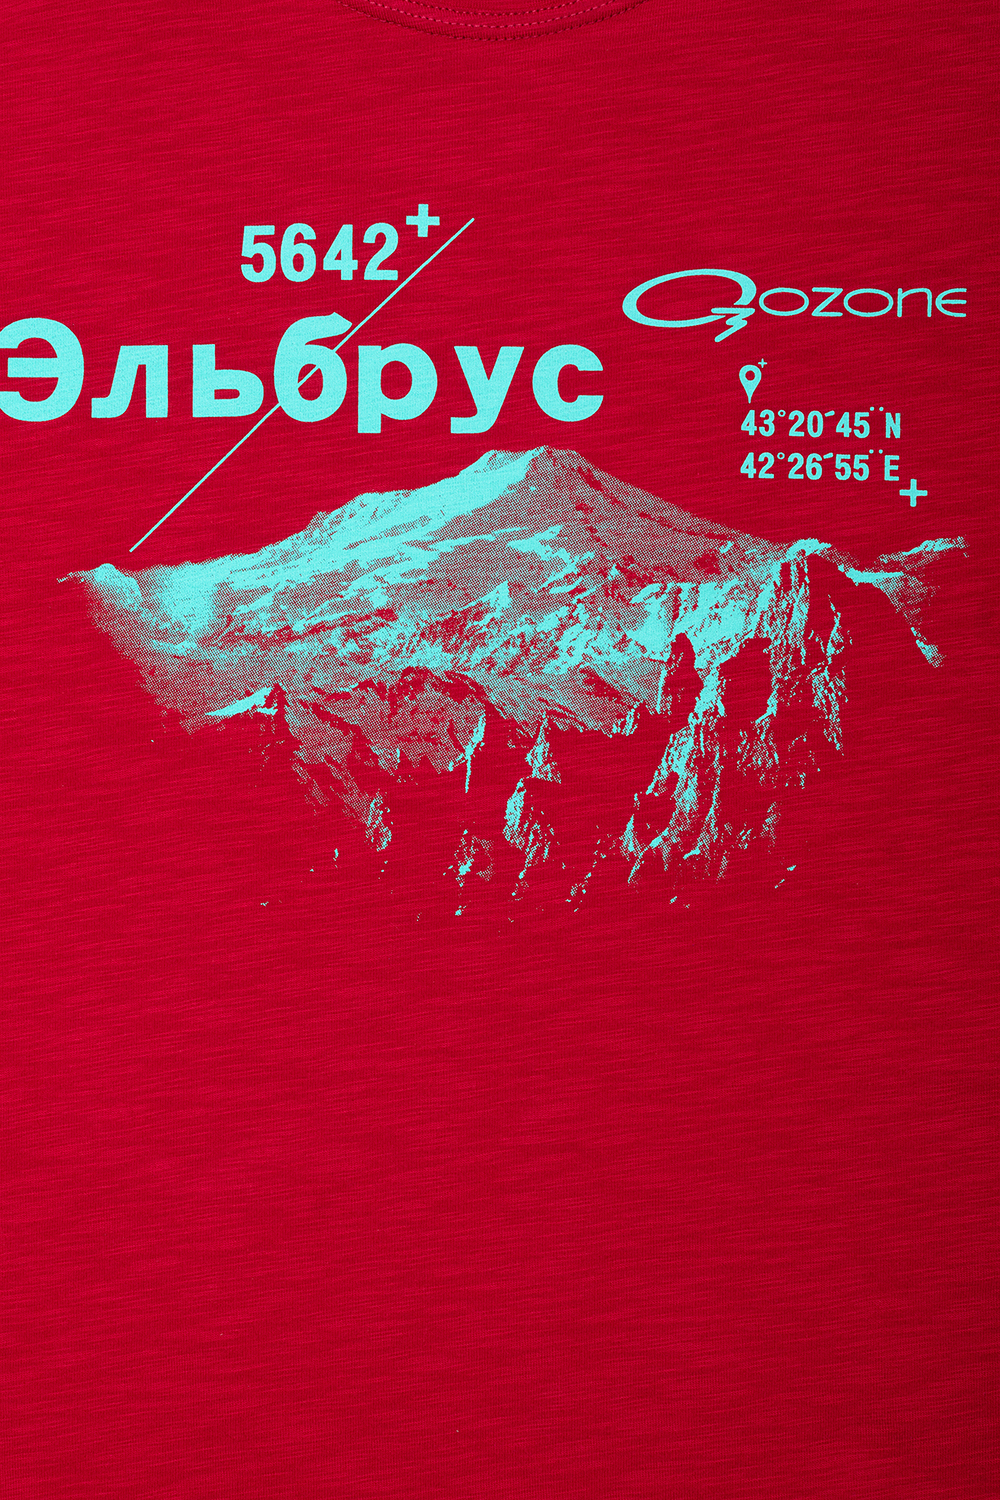 Трикотажная мужская футболка Level купить в O3 Ozone